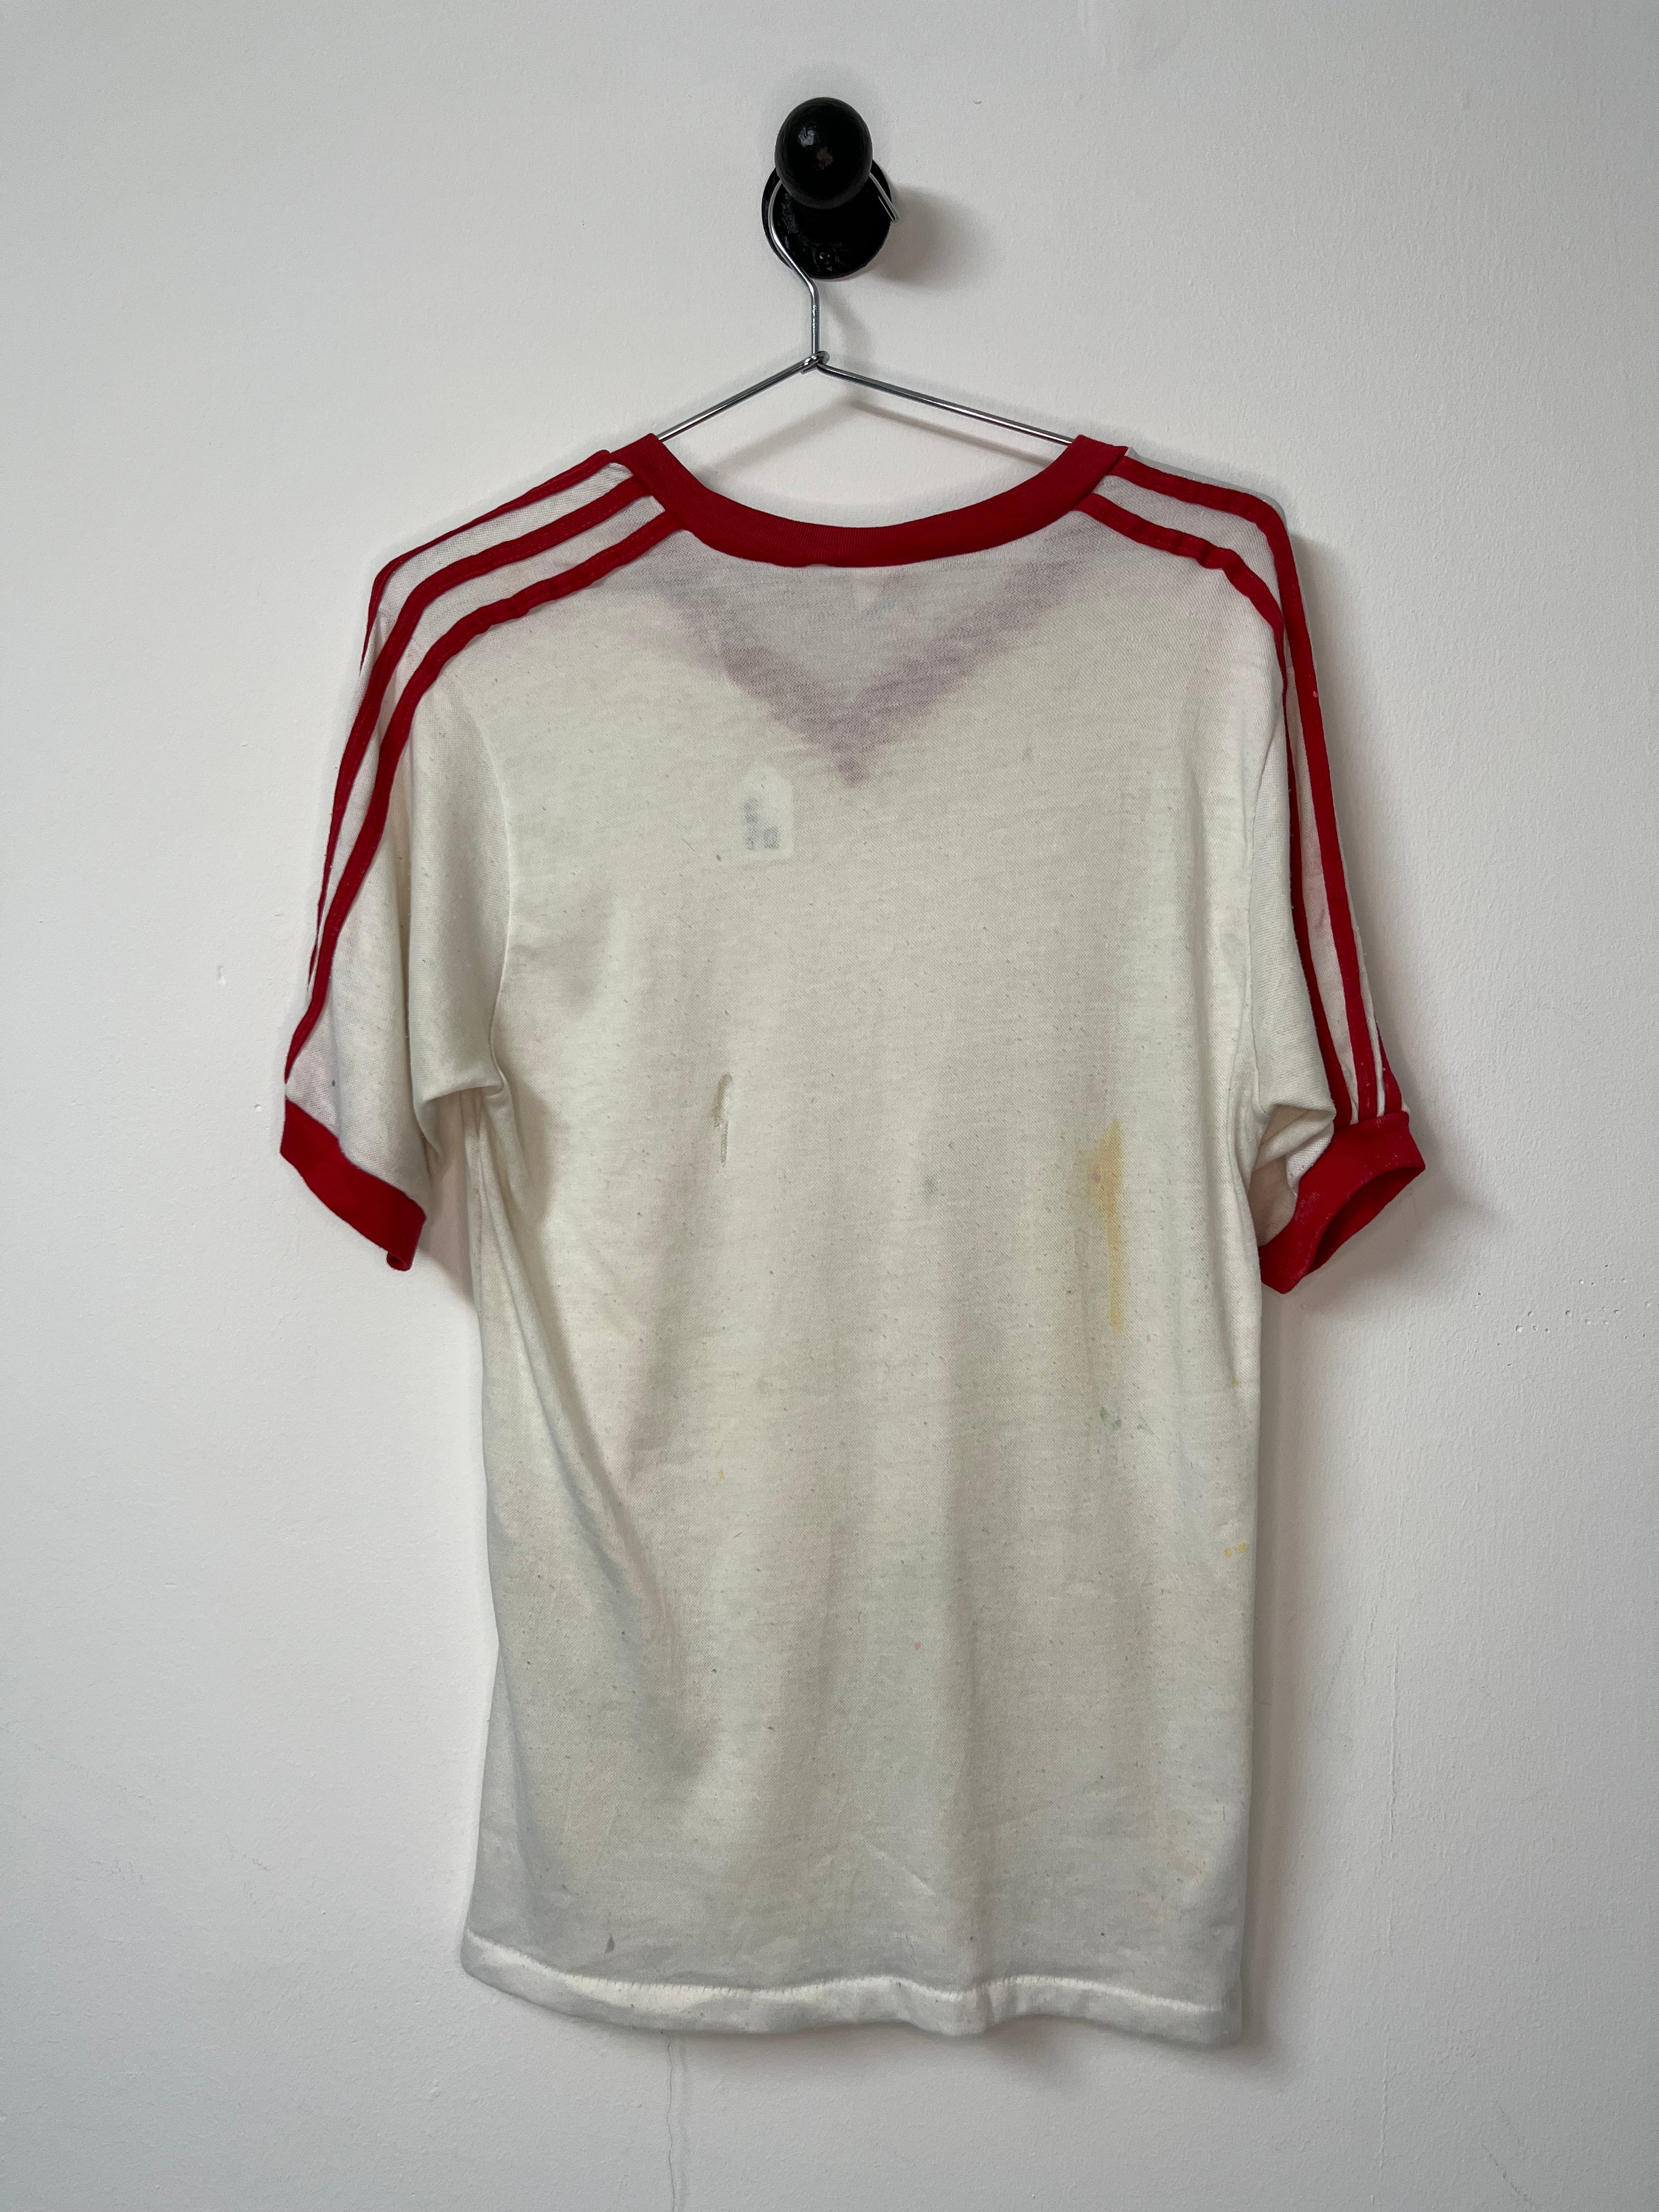 1970s/80s Striped and Trimmed V-Neck Ringer T-Shirt - White/Red - M